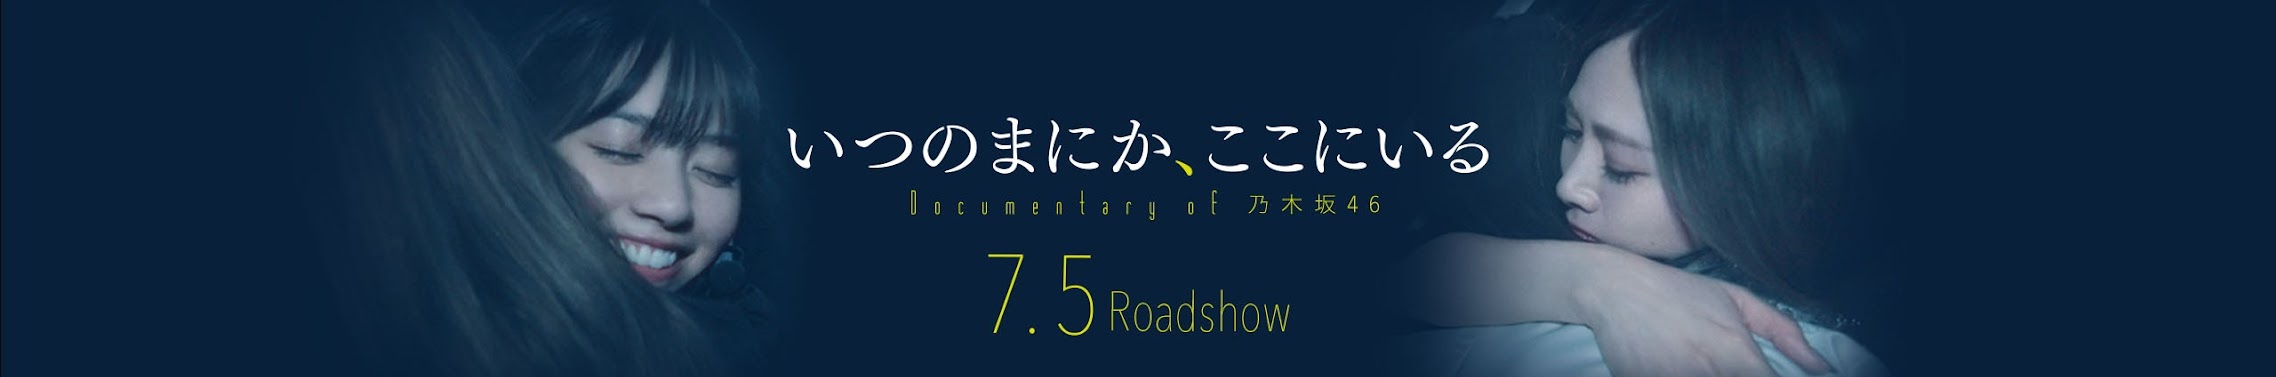 公式映画『いつのまにか、ここにいる Documentary of 乃木坂46 ...